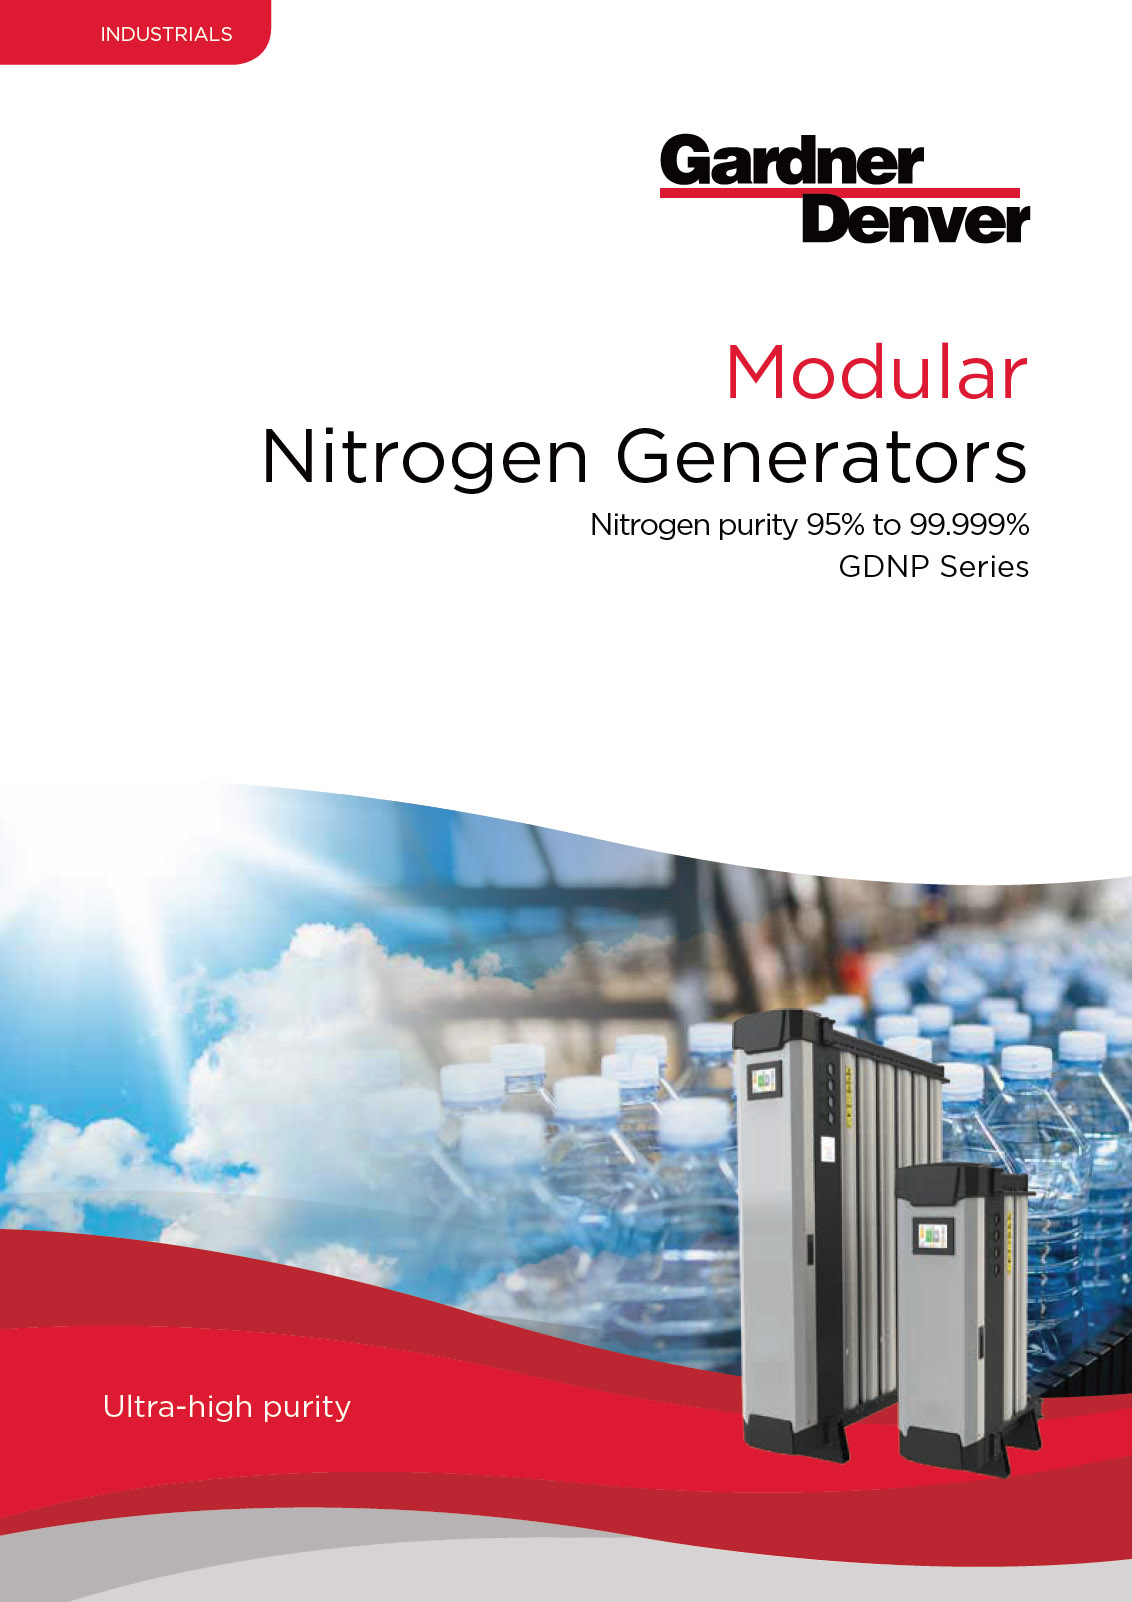 nitrogen-generators-download-brochure